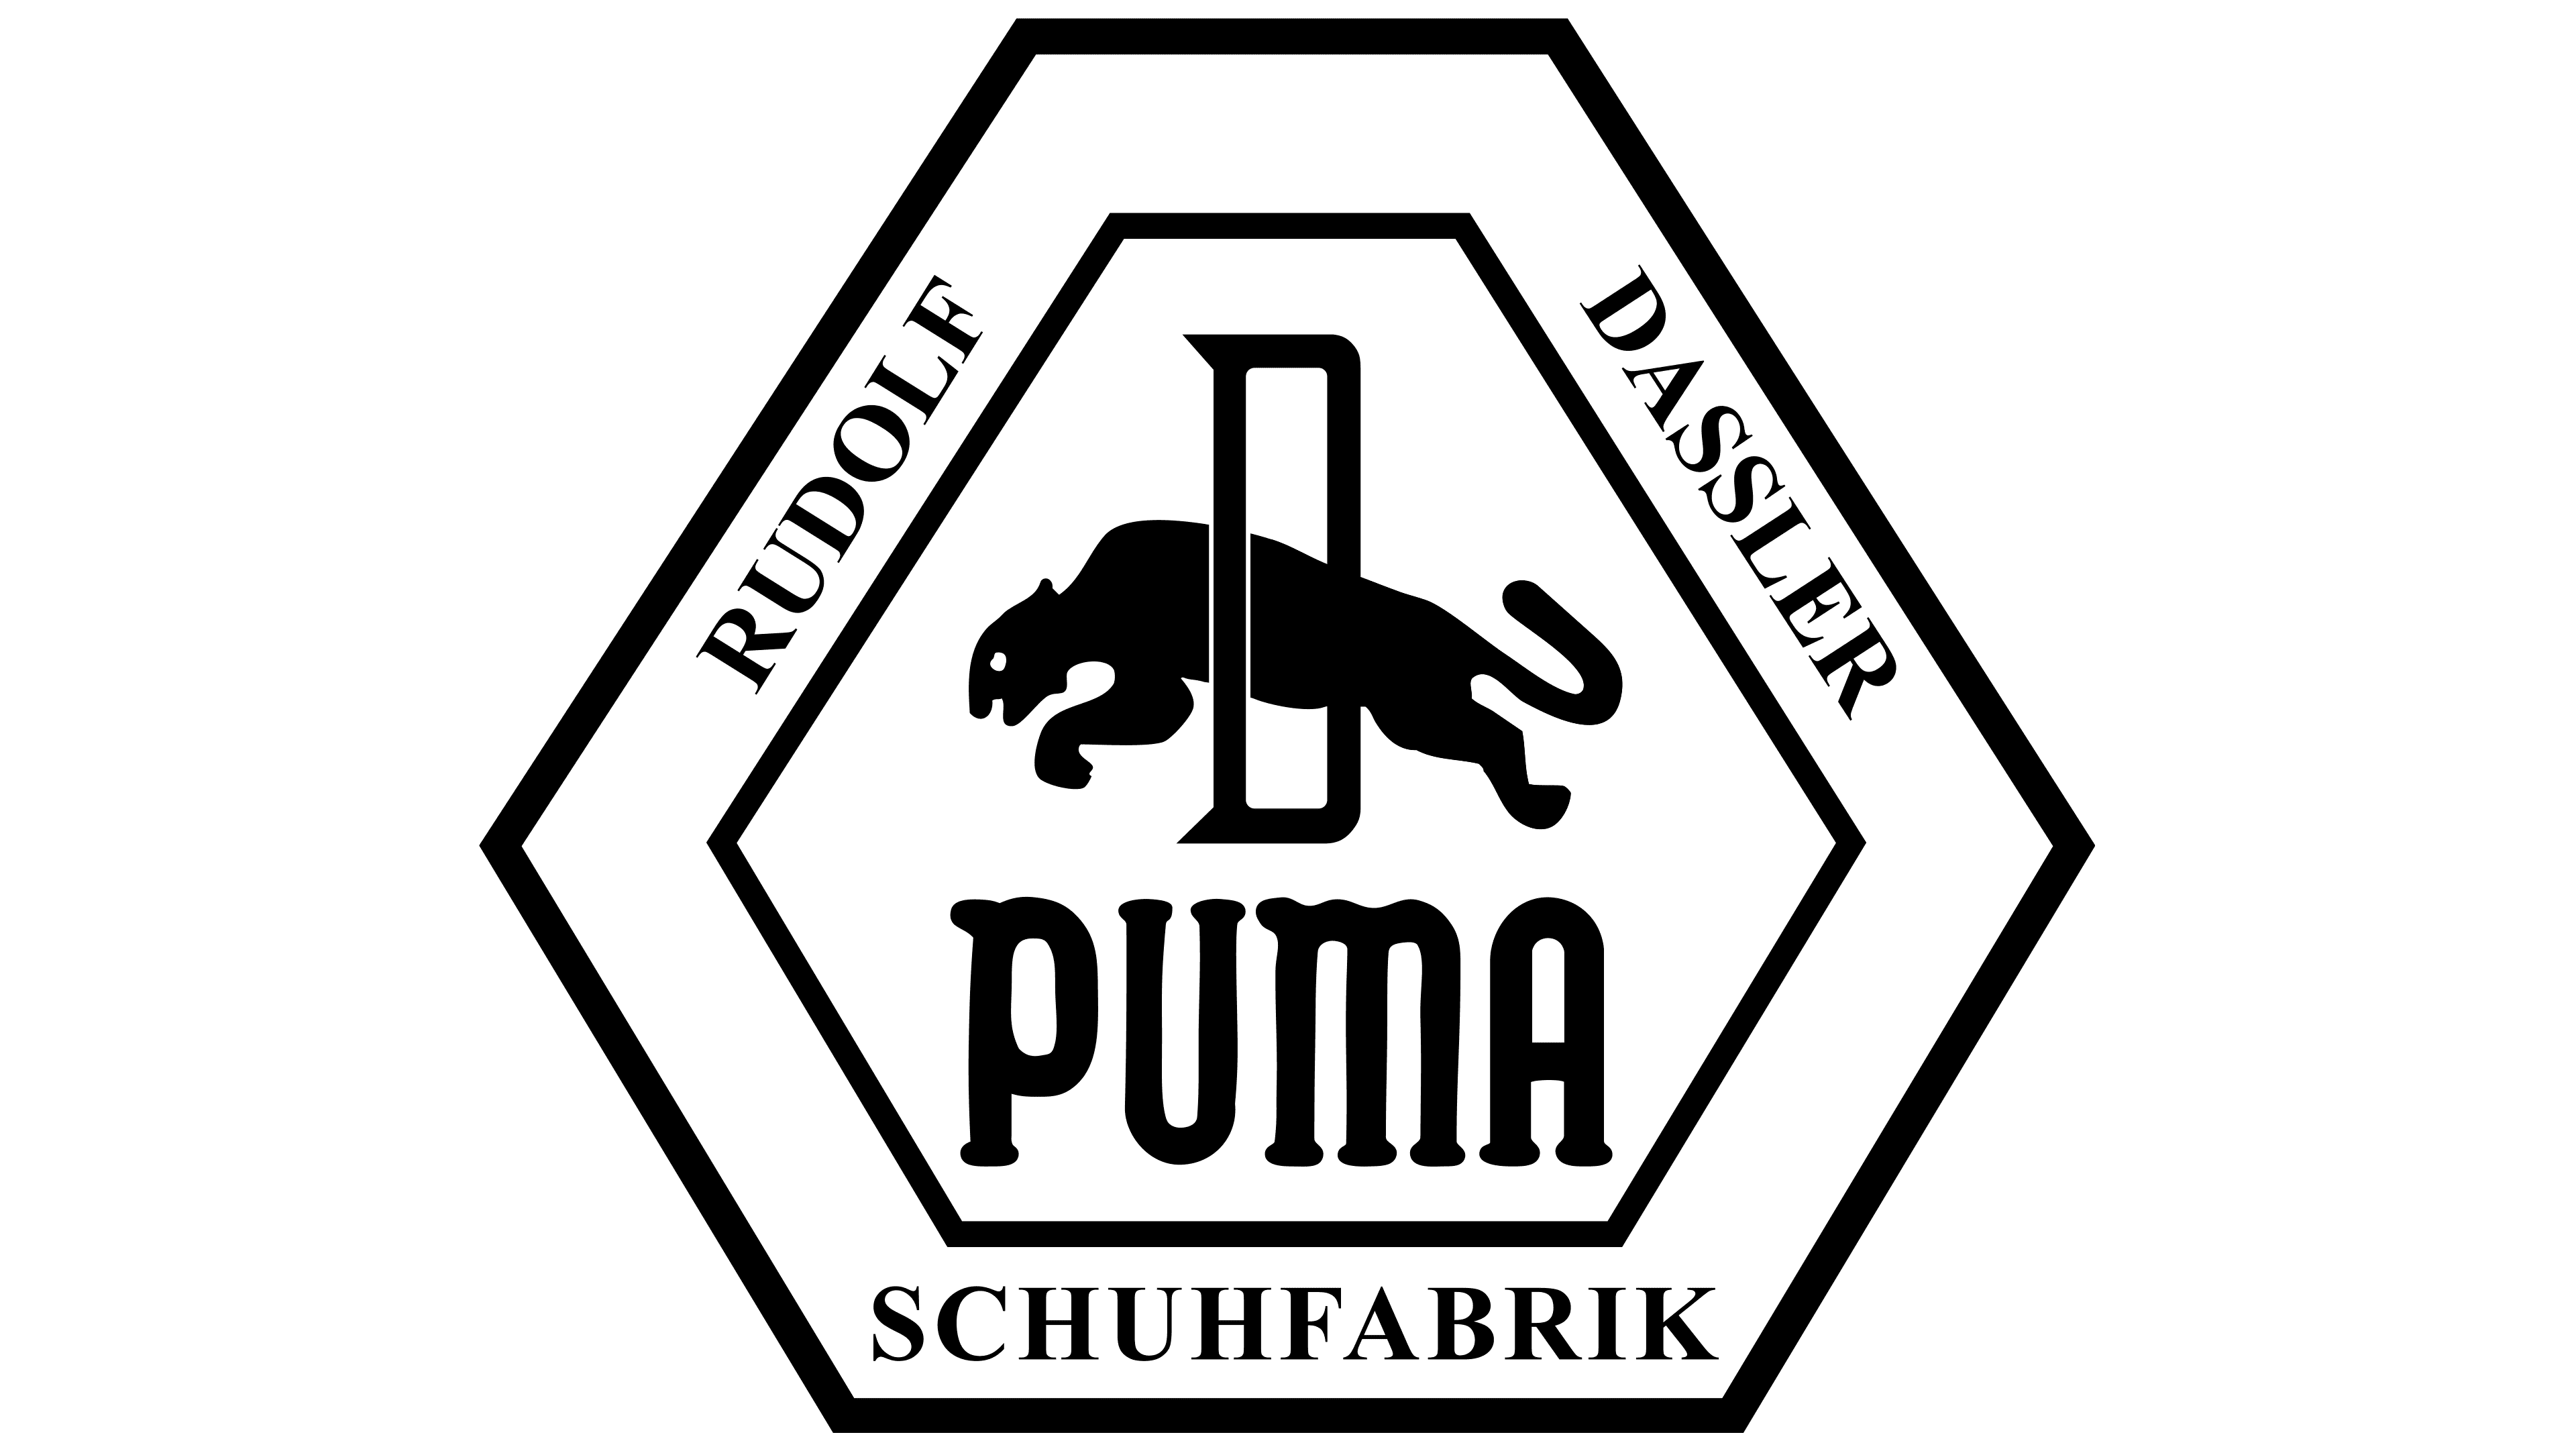 puma logo history